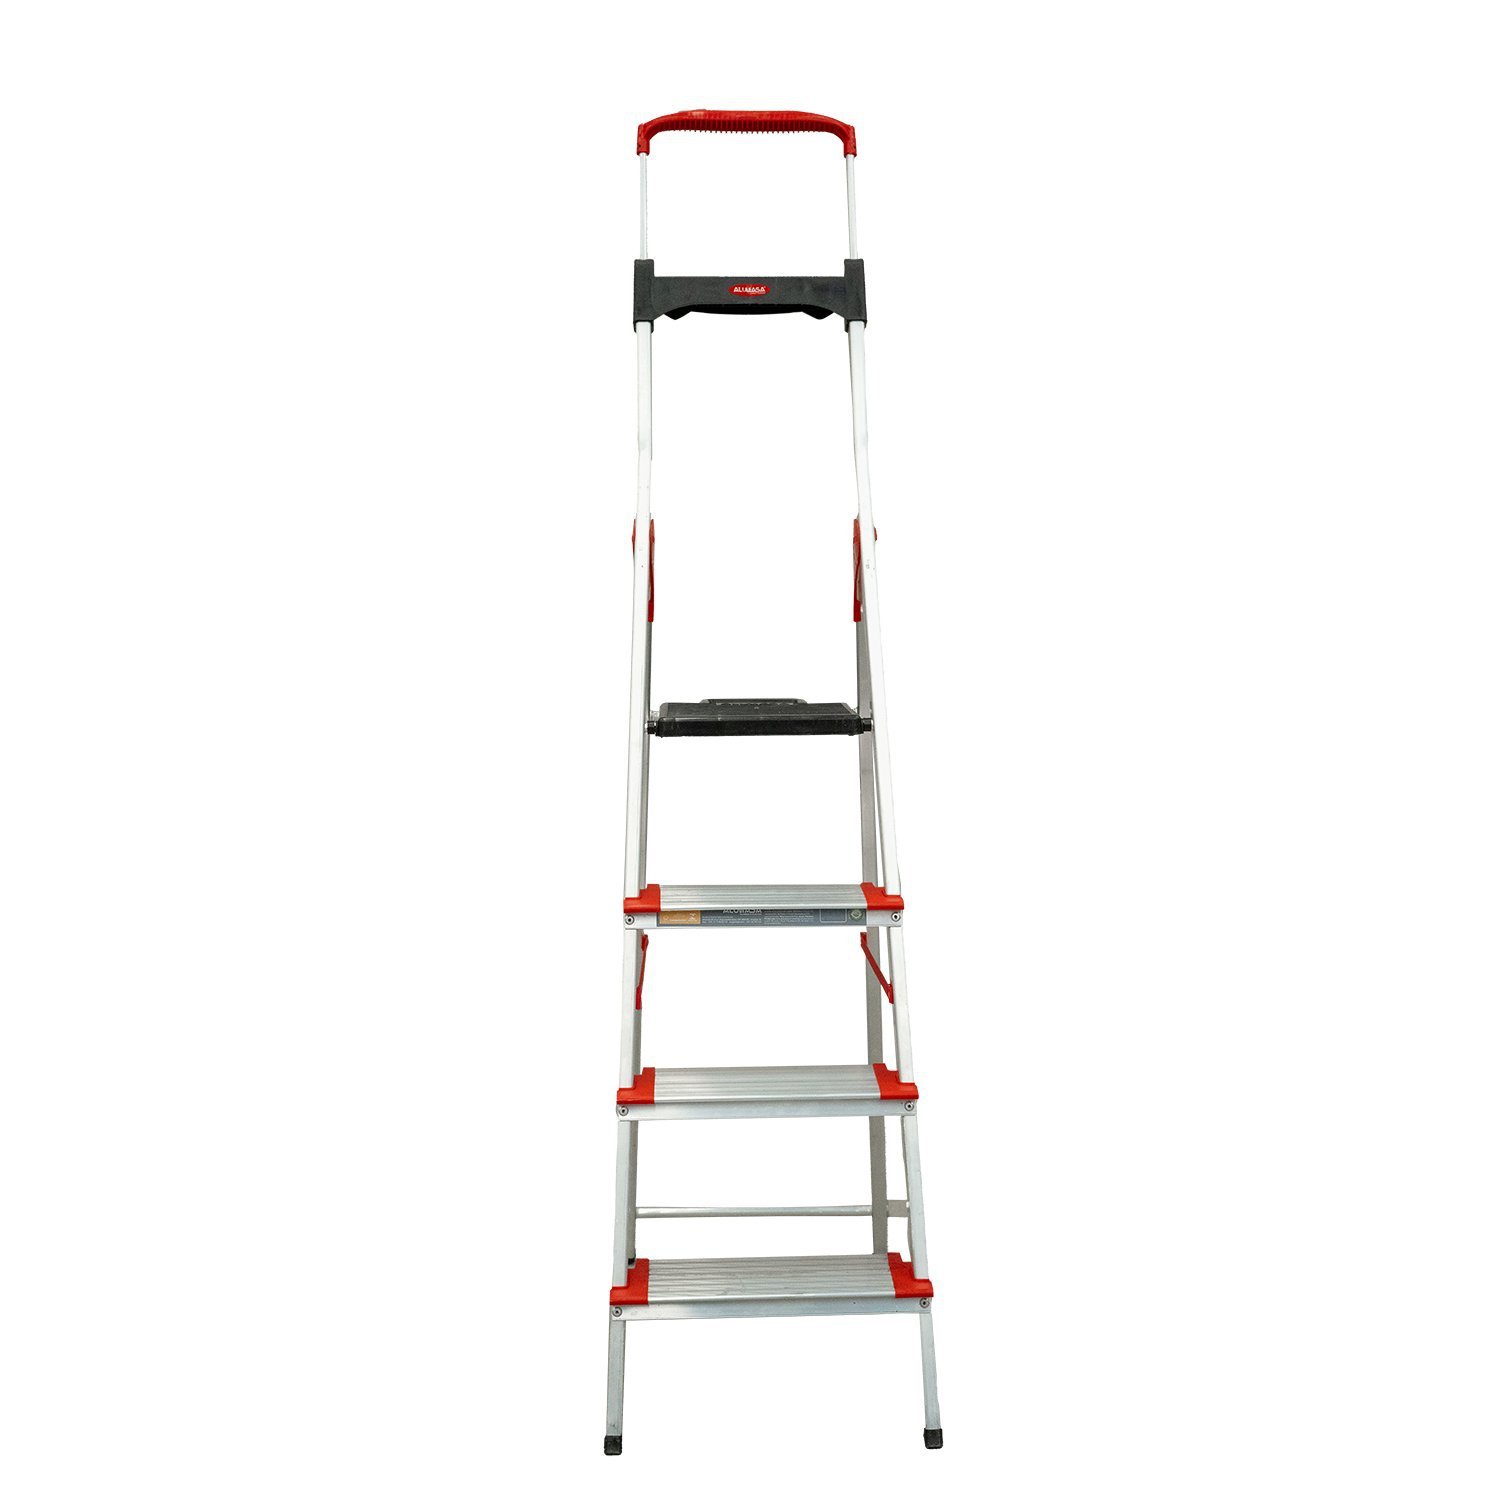 Escada Dobravel 4 Degraus Confort em Aluminio Alumasa